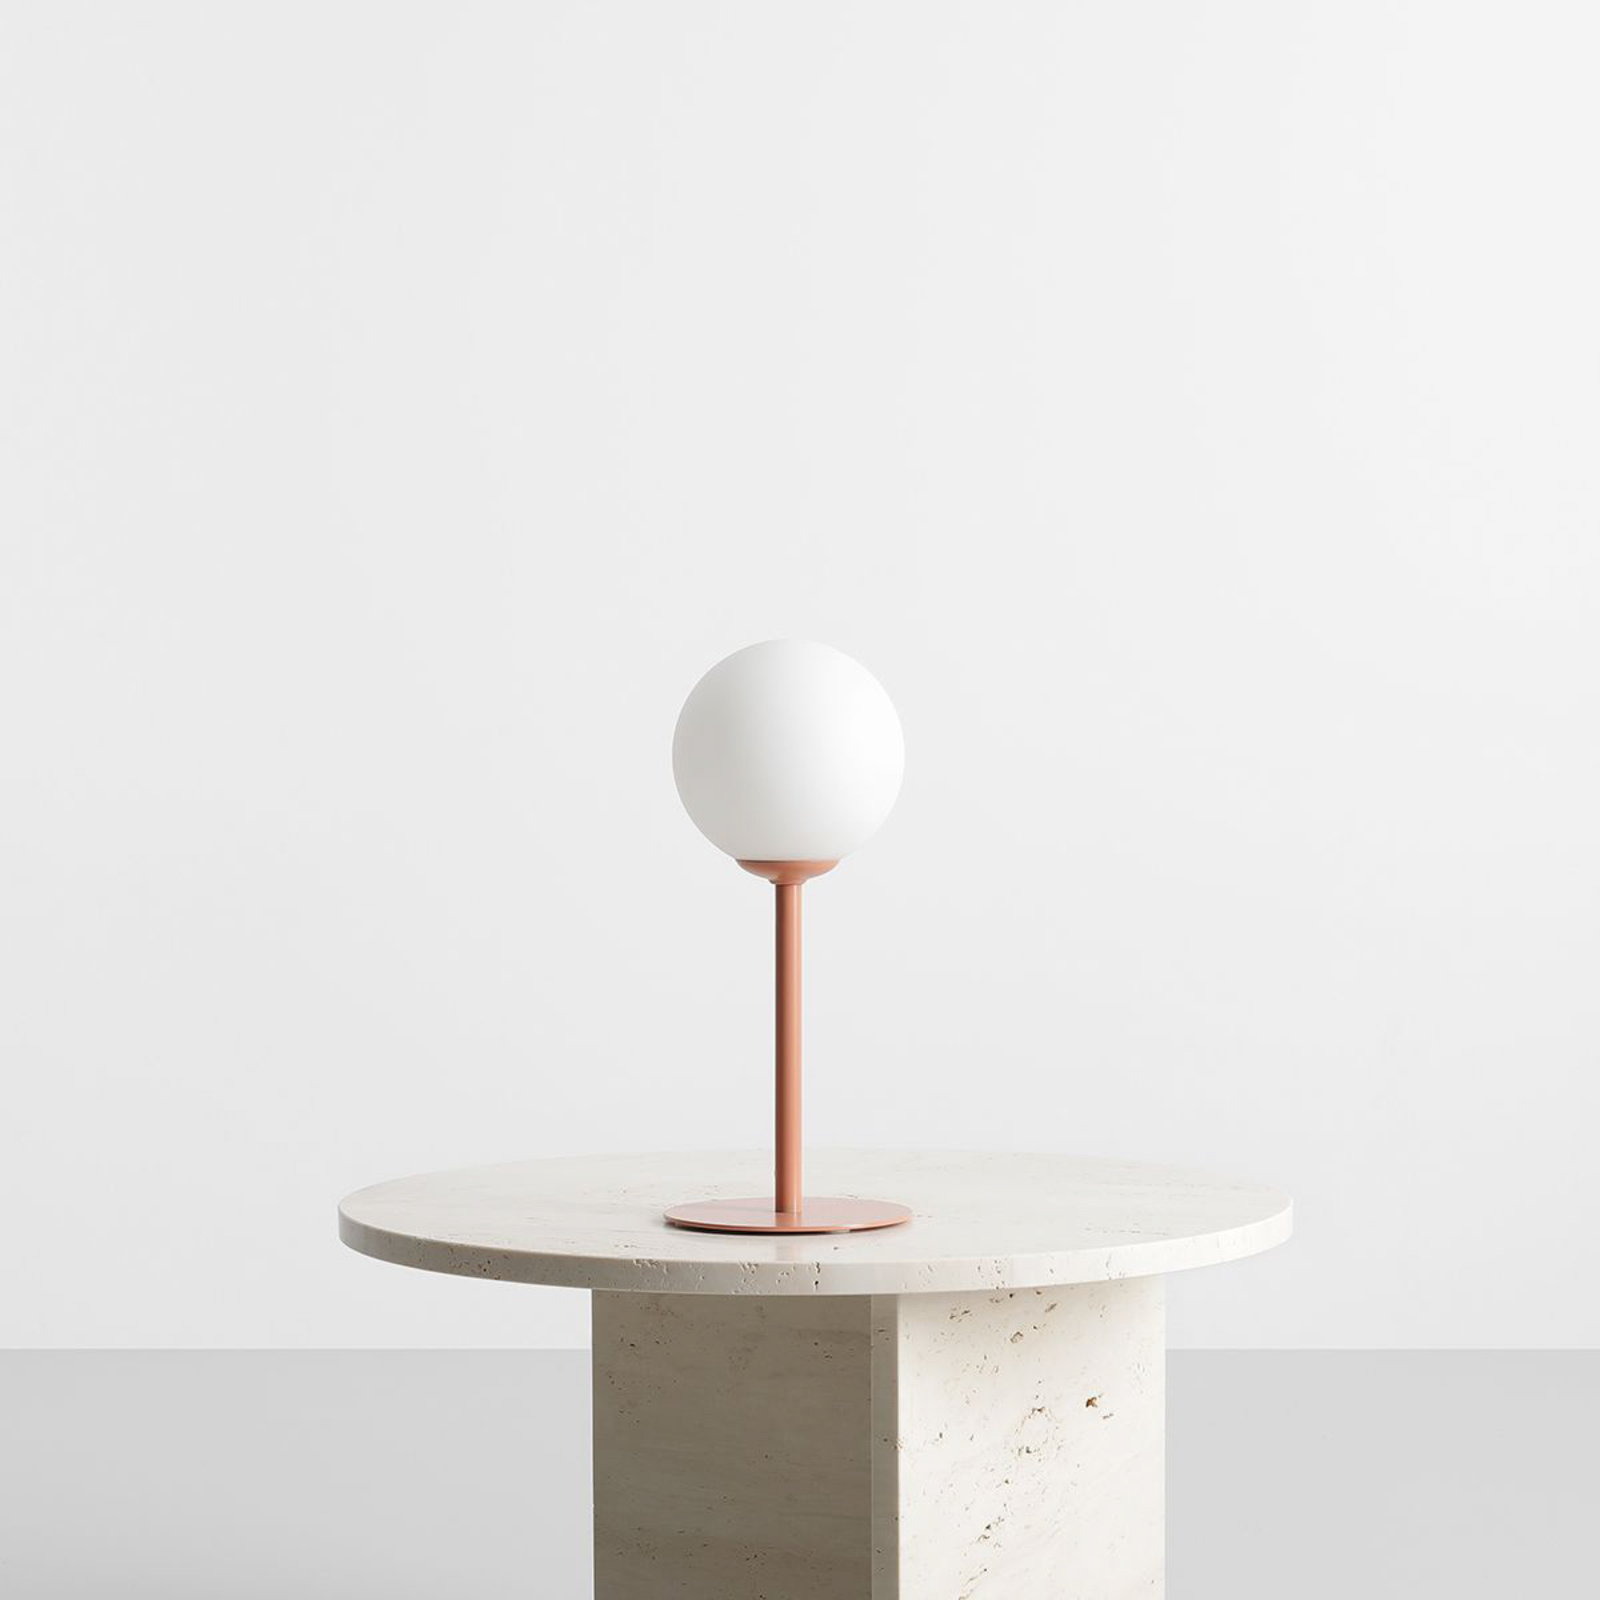 Επιτραπέζιο φωτιστικό Joel, ύψος 35 cm, κοραλλί/λευκό